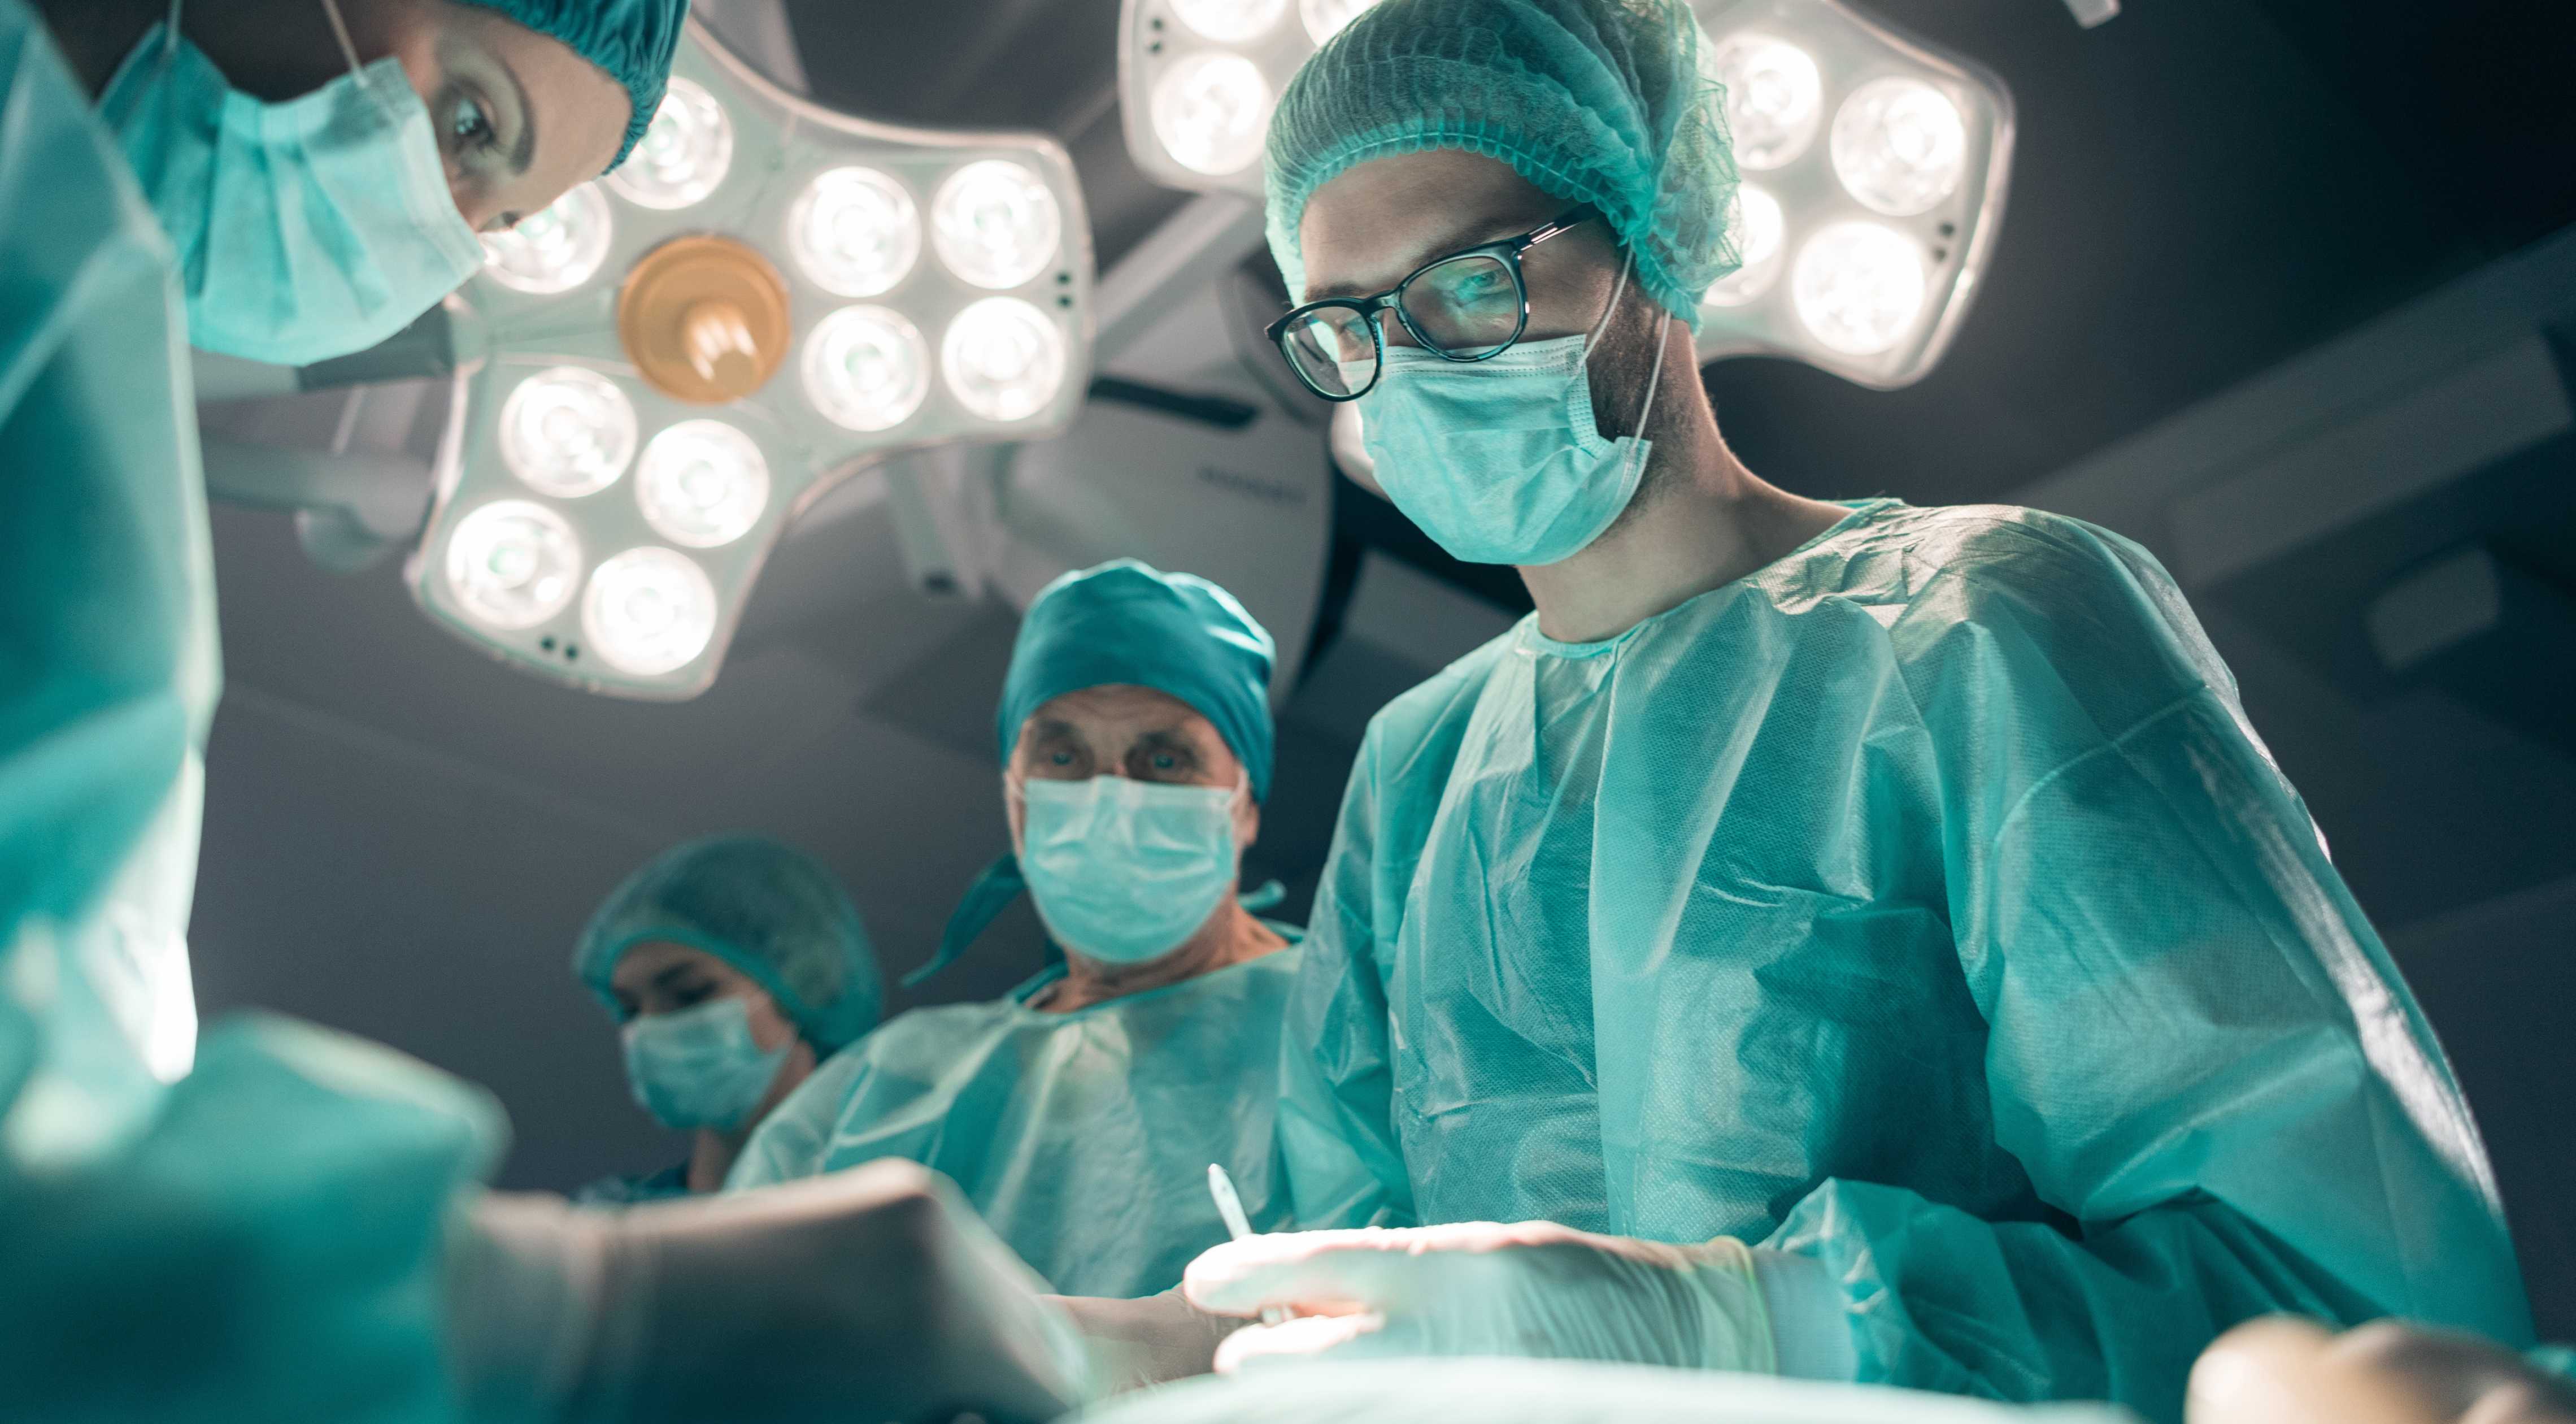 Forside af UX-design-casestudie, der viser kirurger på operationsstuen med lys over hovedet.